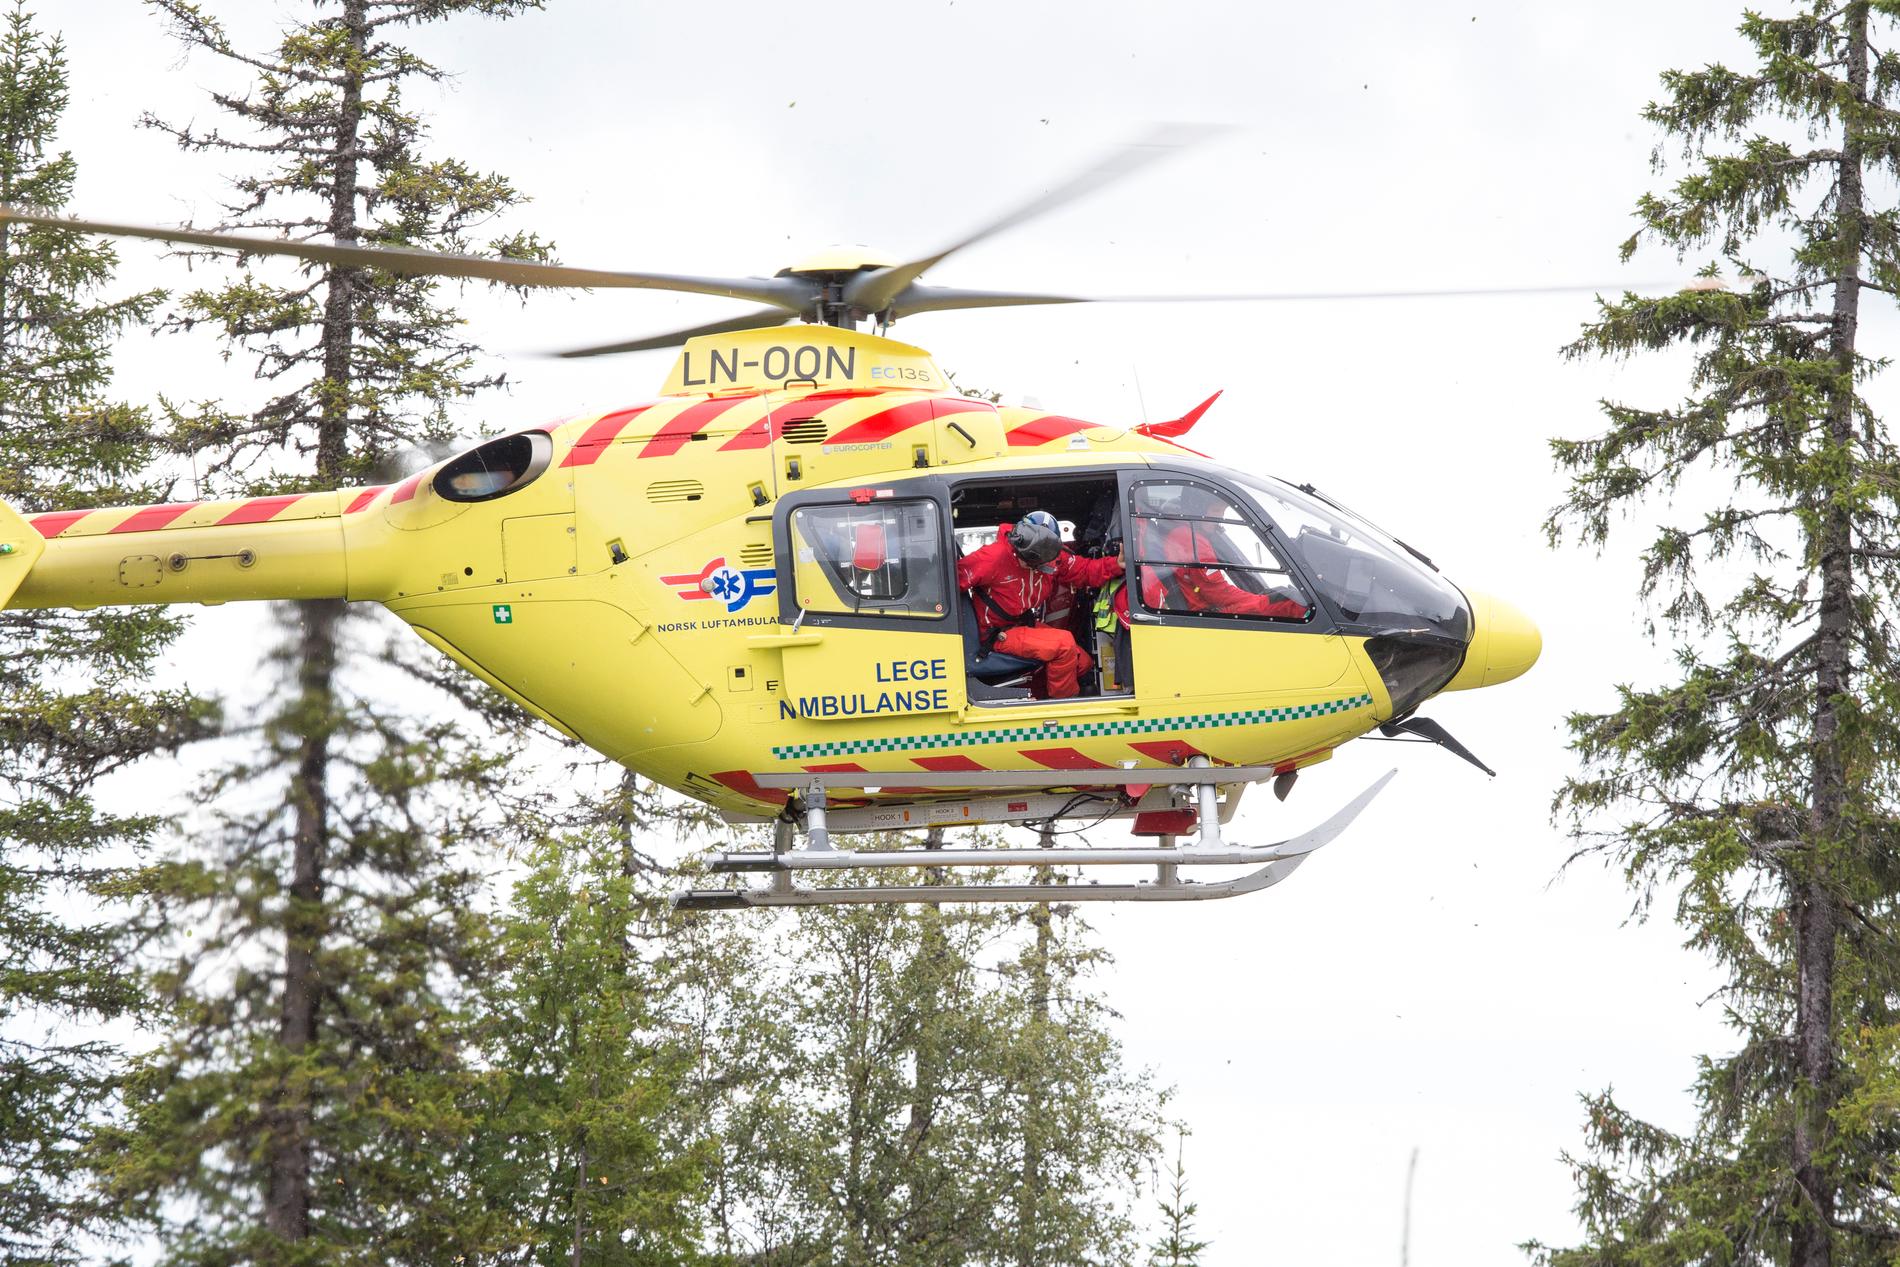 HENTET UT ONSDAG: Det var tirsdag kveld at ulykken skjedde i Sør-Aurdal kommune. Avdøde ble hentet ut med ambulansehelikopter onsdag formiddag.